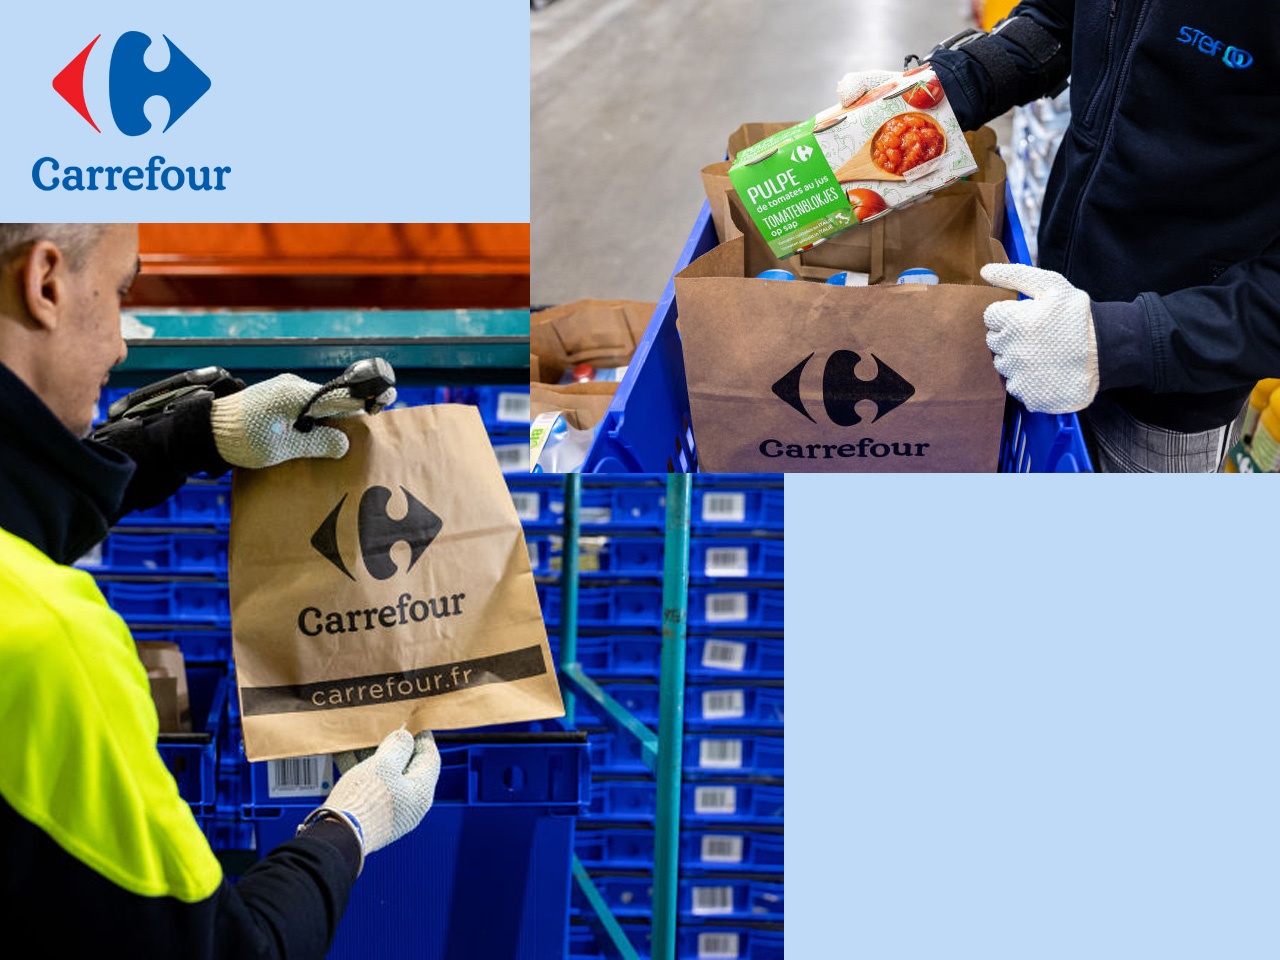 Carrefour ouvre un nouveau site logistique de livraison à domicile à Aix-en-Provence, afin de renforcer ses offres e-commerce dans la région Provence-Alpes-Côte d’Azur